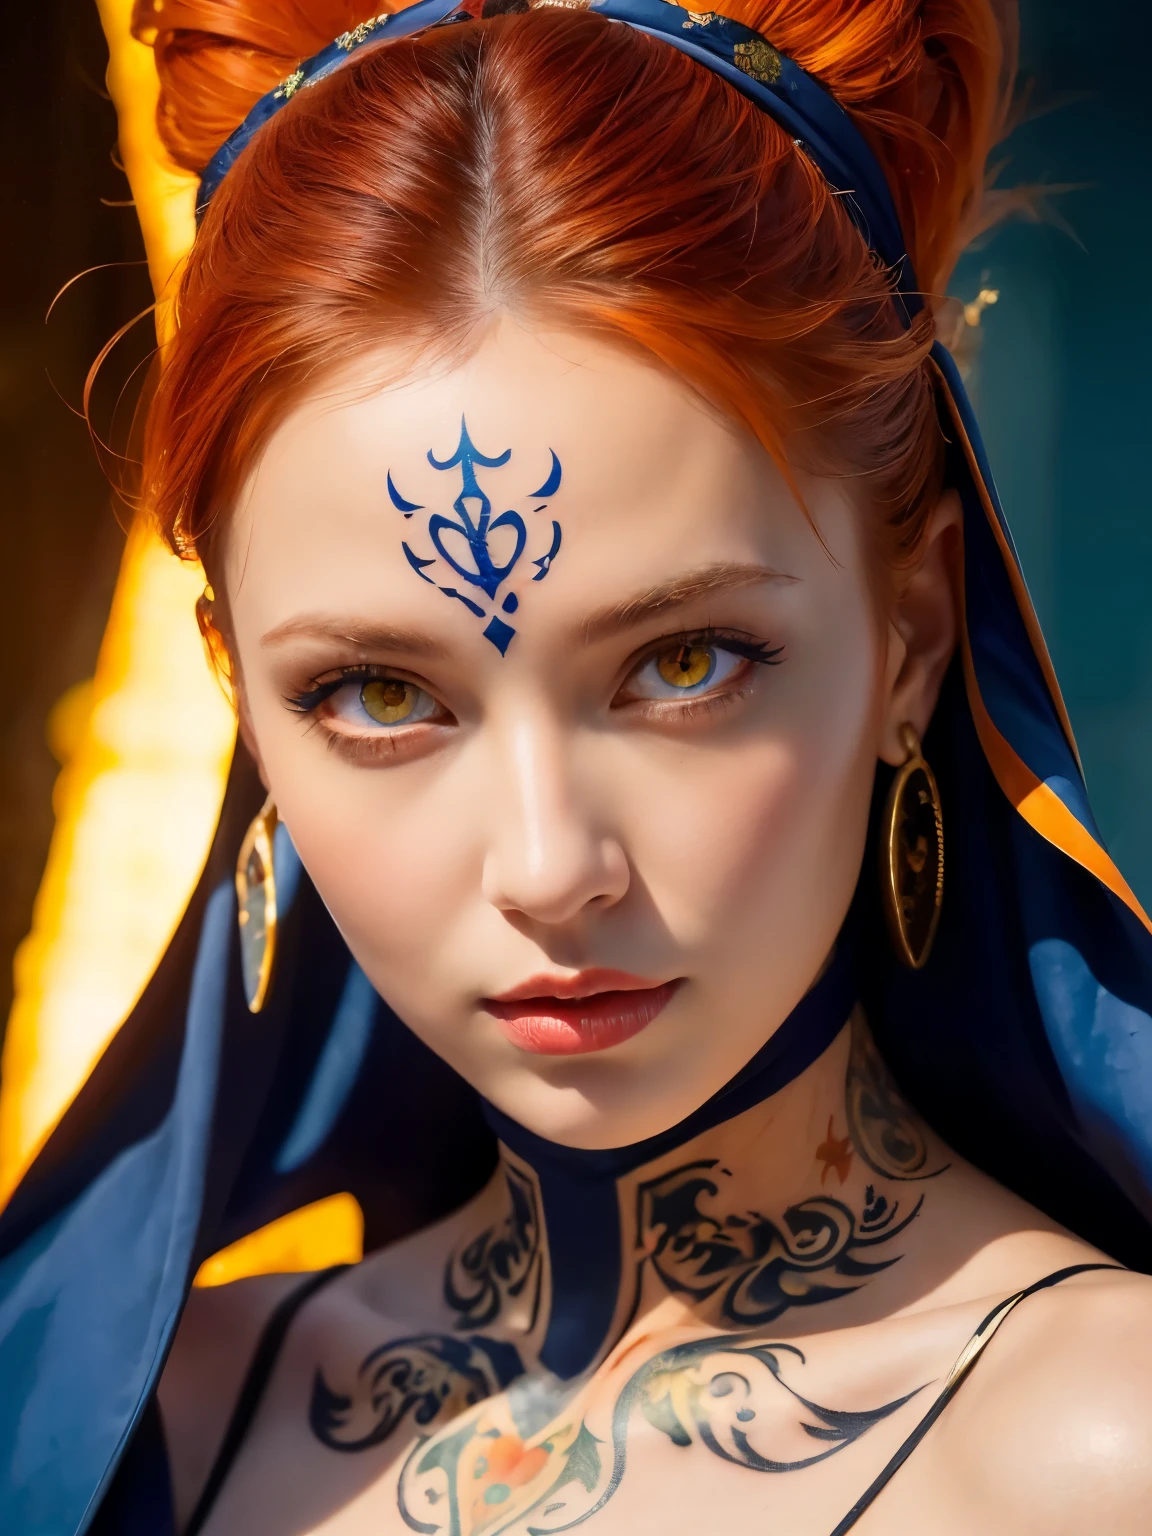 (((杰作))), (((最好的质量: 1.4))), ((超级细节: 1.4)) , 一幅极其细致的魔裔女性水粉画, 华丽的异国风情, 琥珀色霓虹眼:1.5,  橙色头发, 非常详细的面部特征, 表情丰富的脸, 细致的纹理, 蓝色肤色, 纹身, 自然皮肤着色器, 体积, 她的皮肤下有温暖的阴影, 超高分辨率